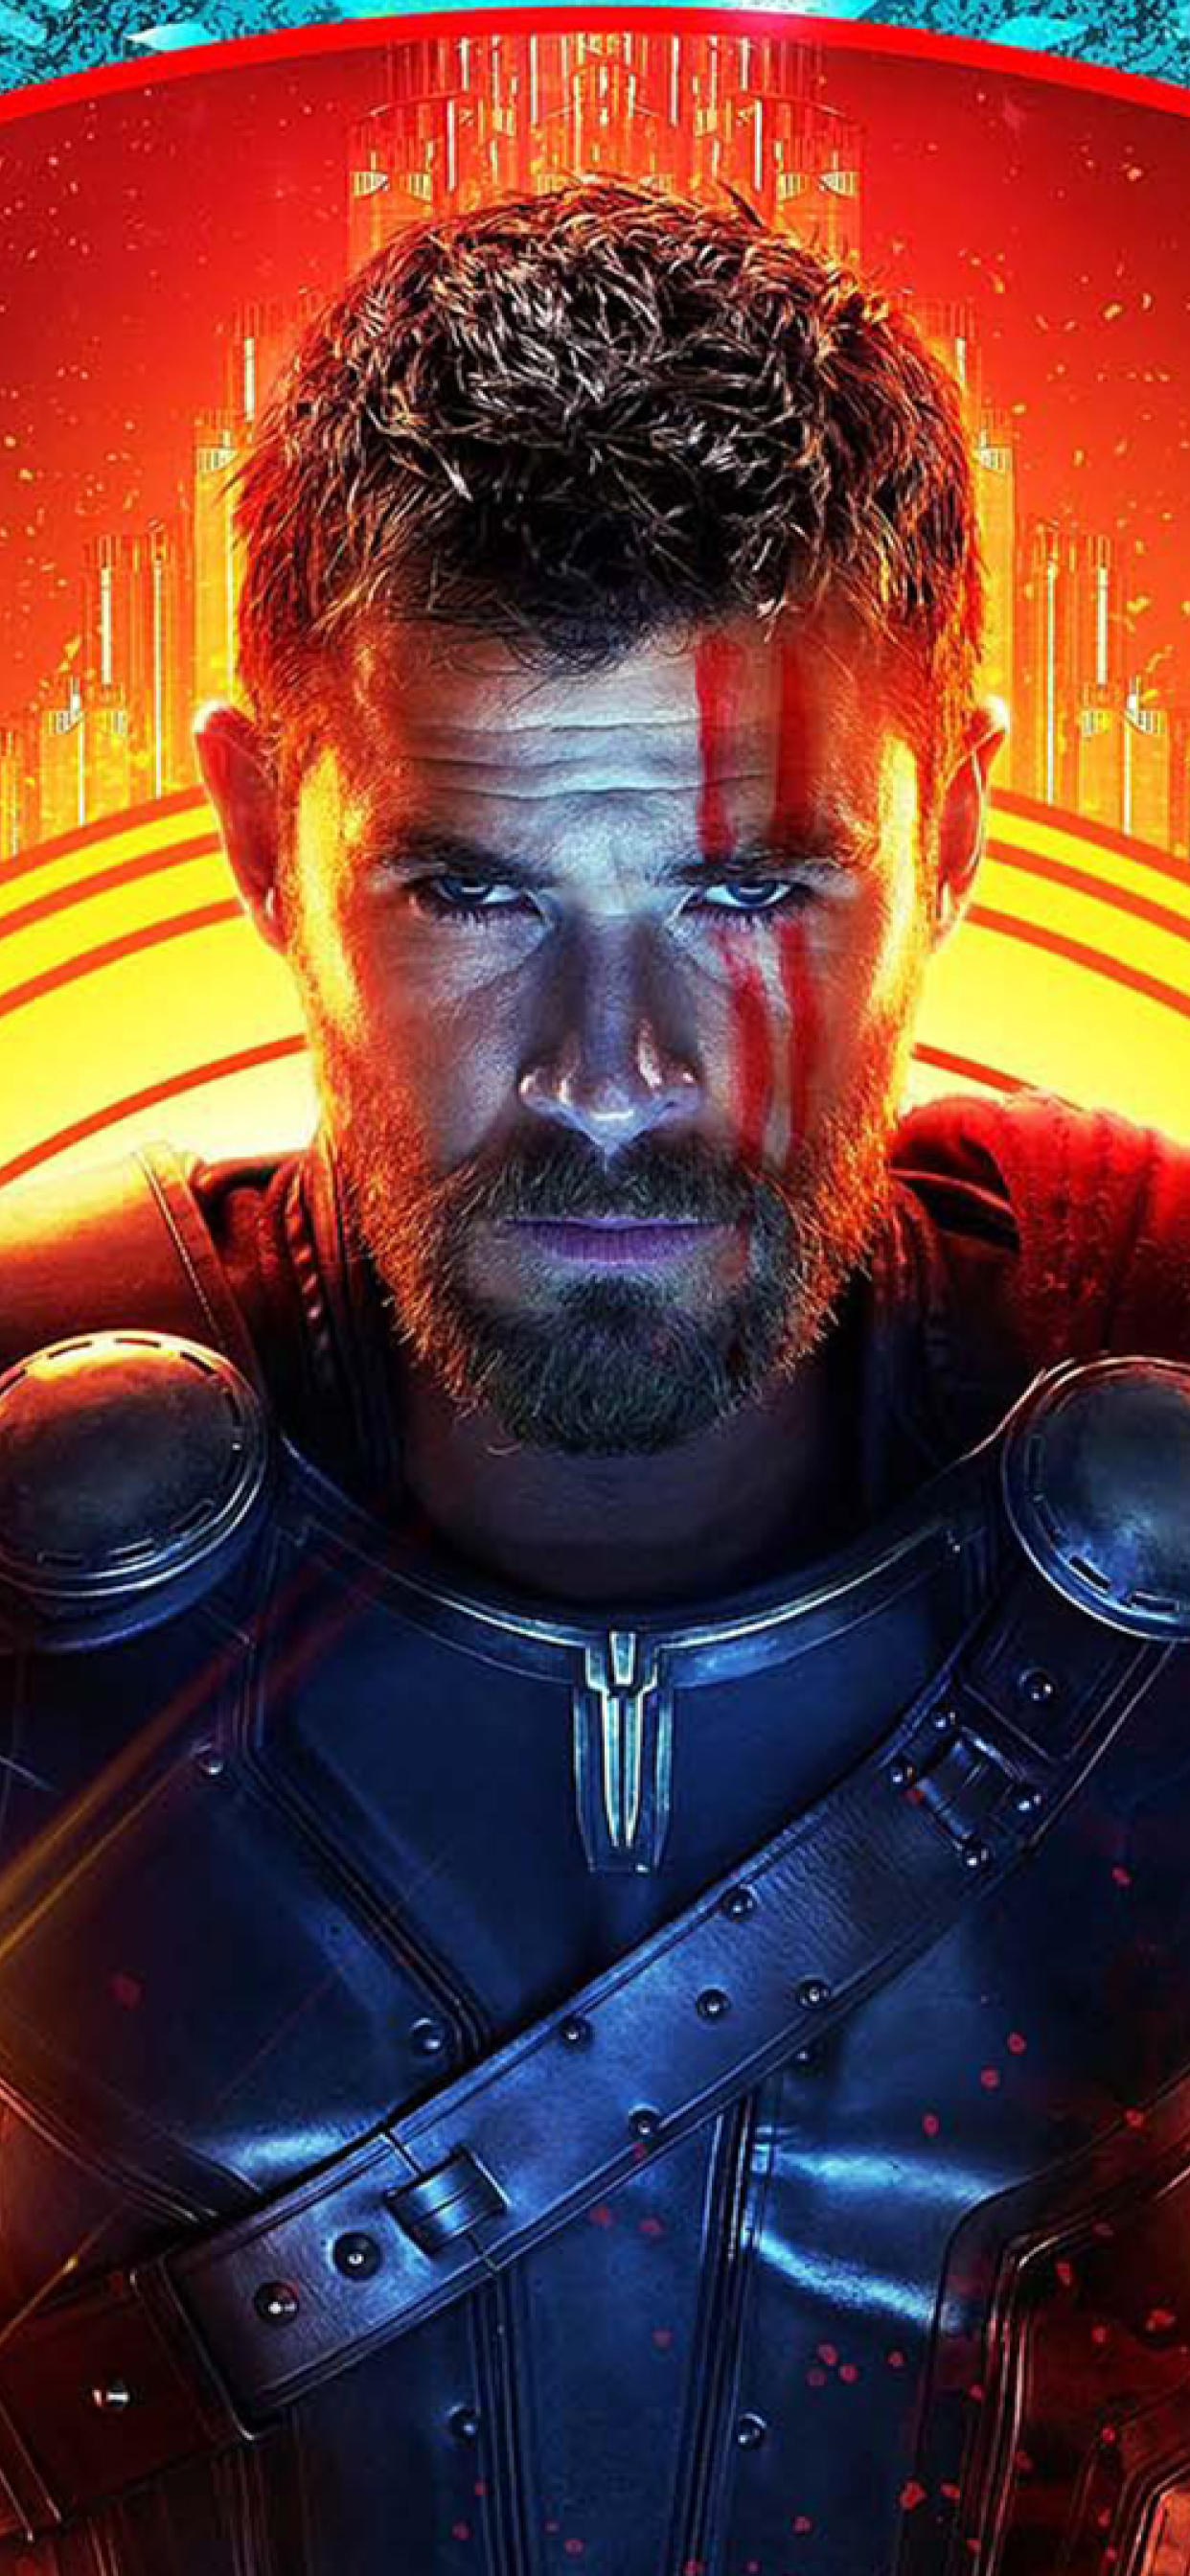 32+] Thor: Ragnarok HD Wallpapers - WallpaperSafari